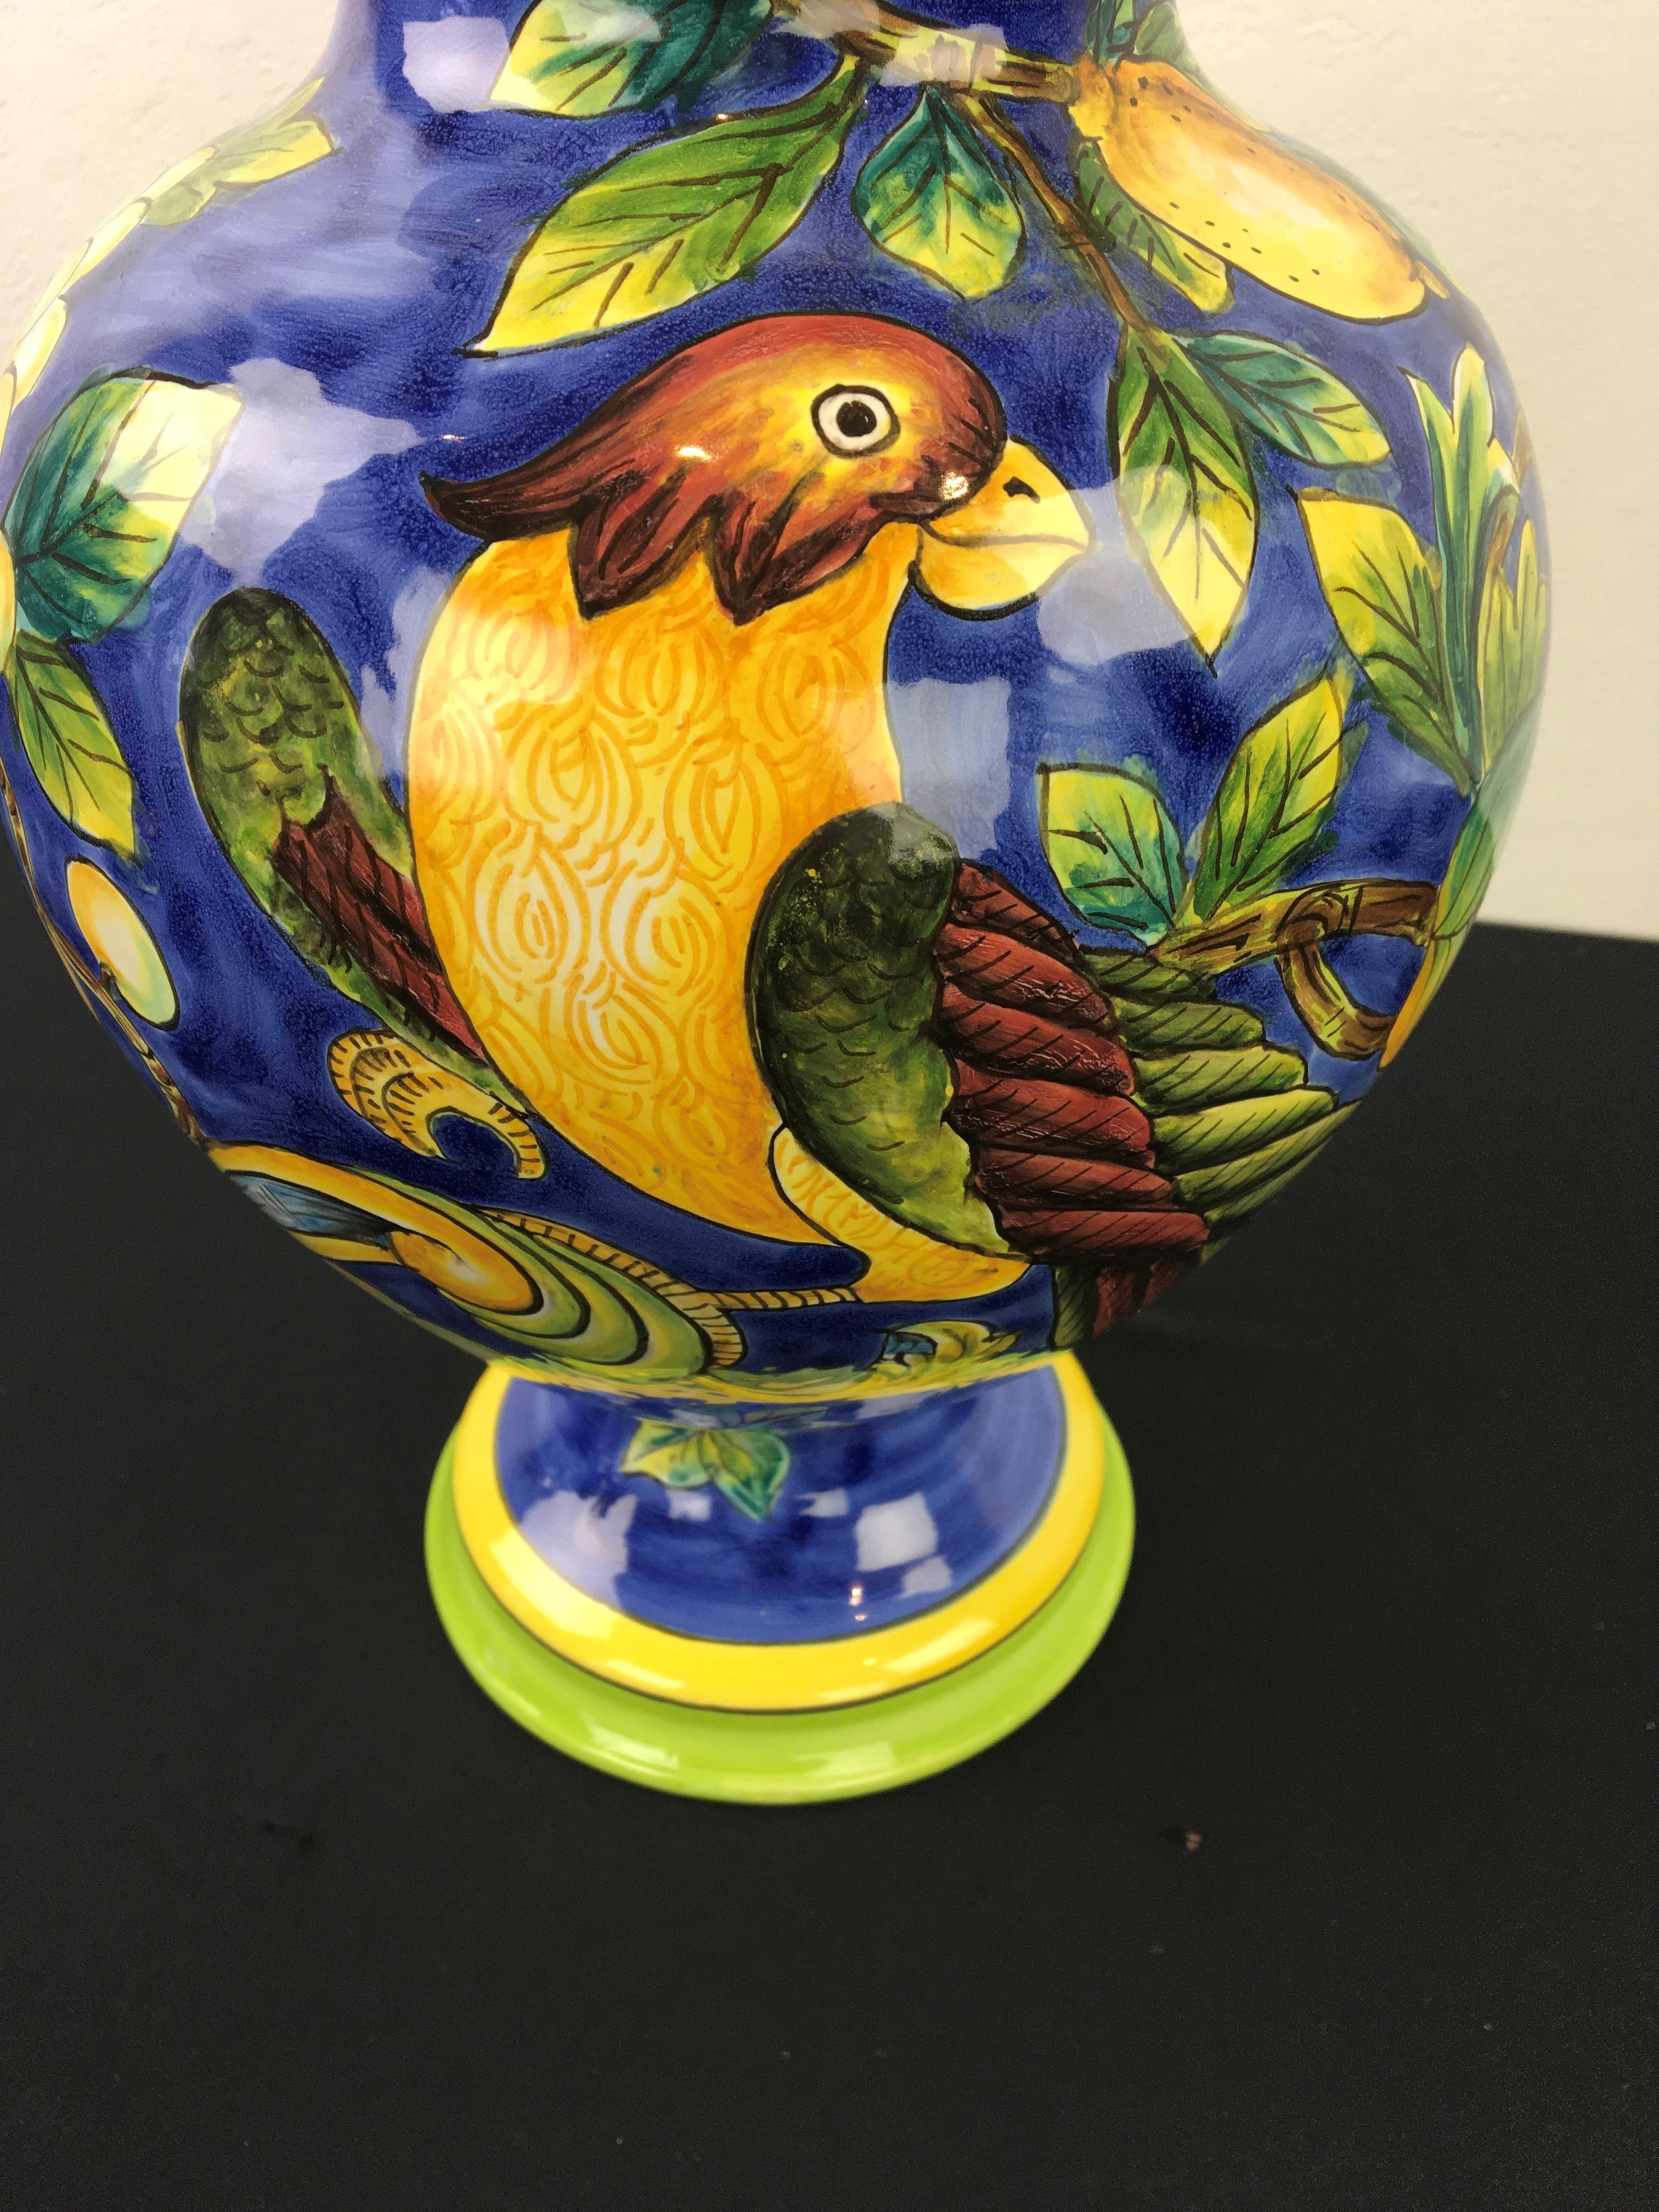 Blauer Krug mit einem Vogel und vielen Zitronen, Blumen und Blättern.
Ein Keramikgefäß mit Deckel mit einem schönen Vogel in einem Zitronenbaum. 
Schöne glasierte blaue Krug mit Deckel, Topf mit Deckel, Urne. 
Mediterranes Design - mediterraner